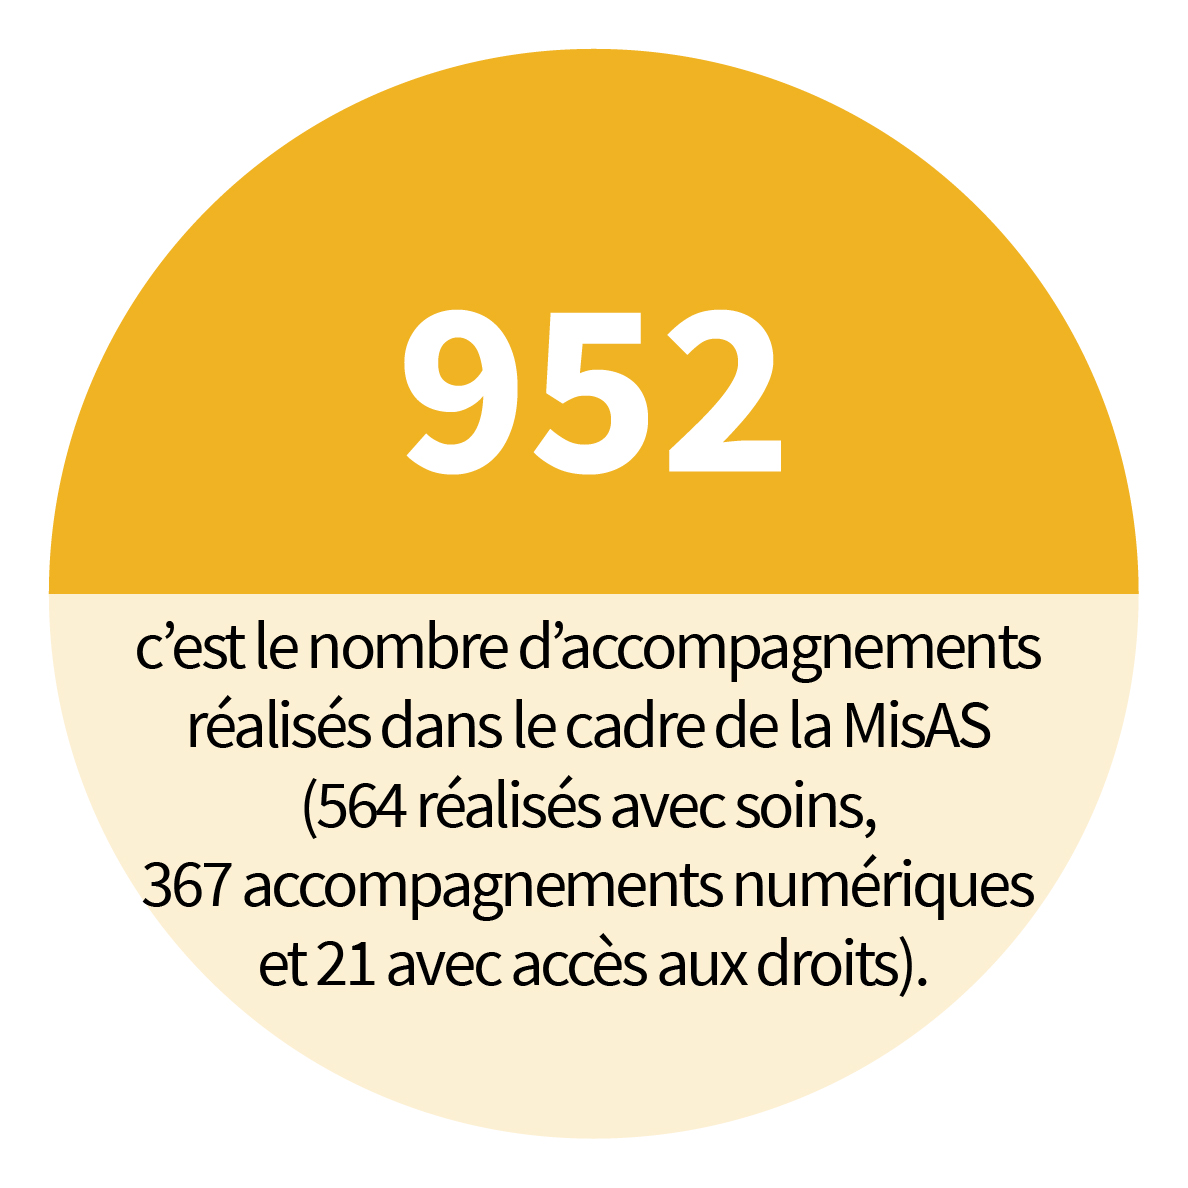 952 c’est le nombre d’accompagnements réalisés dans le cadre de la Mission accompagnement en santé (MisAS) (564 réalisés avec soins, 367 accompagnements numériques et 21 avec accès aux droits).